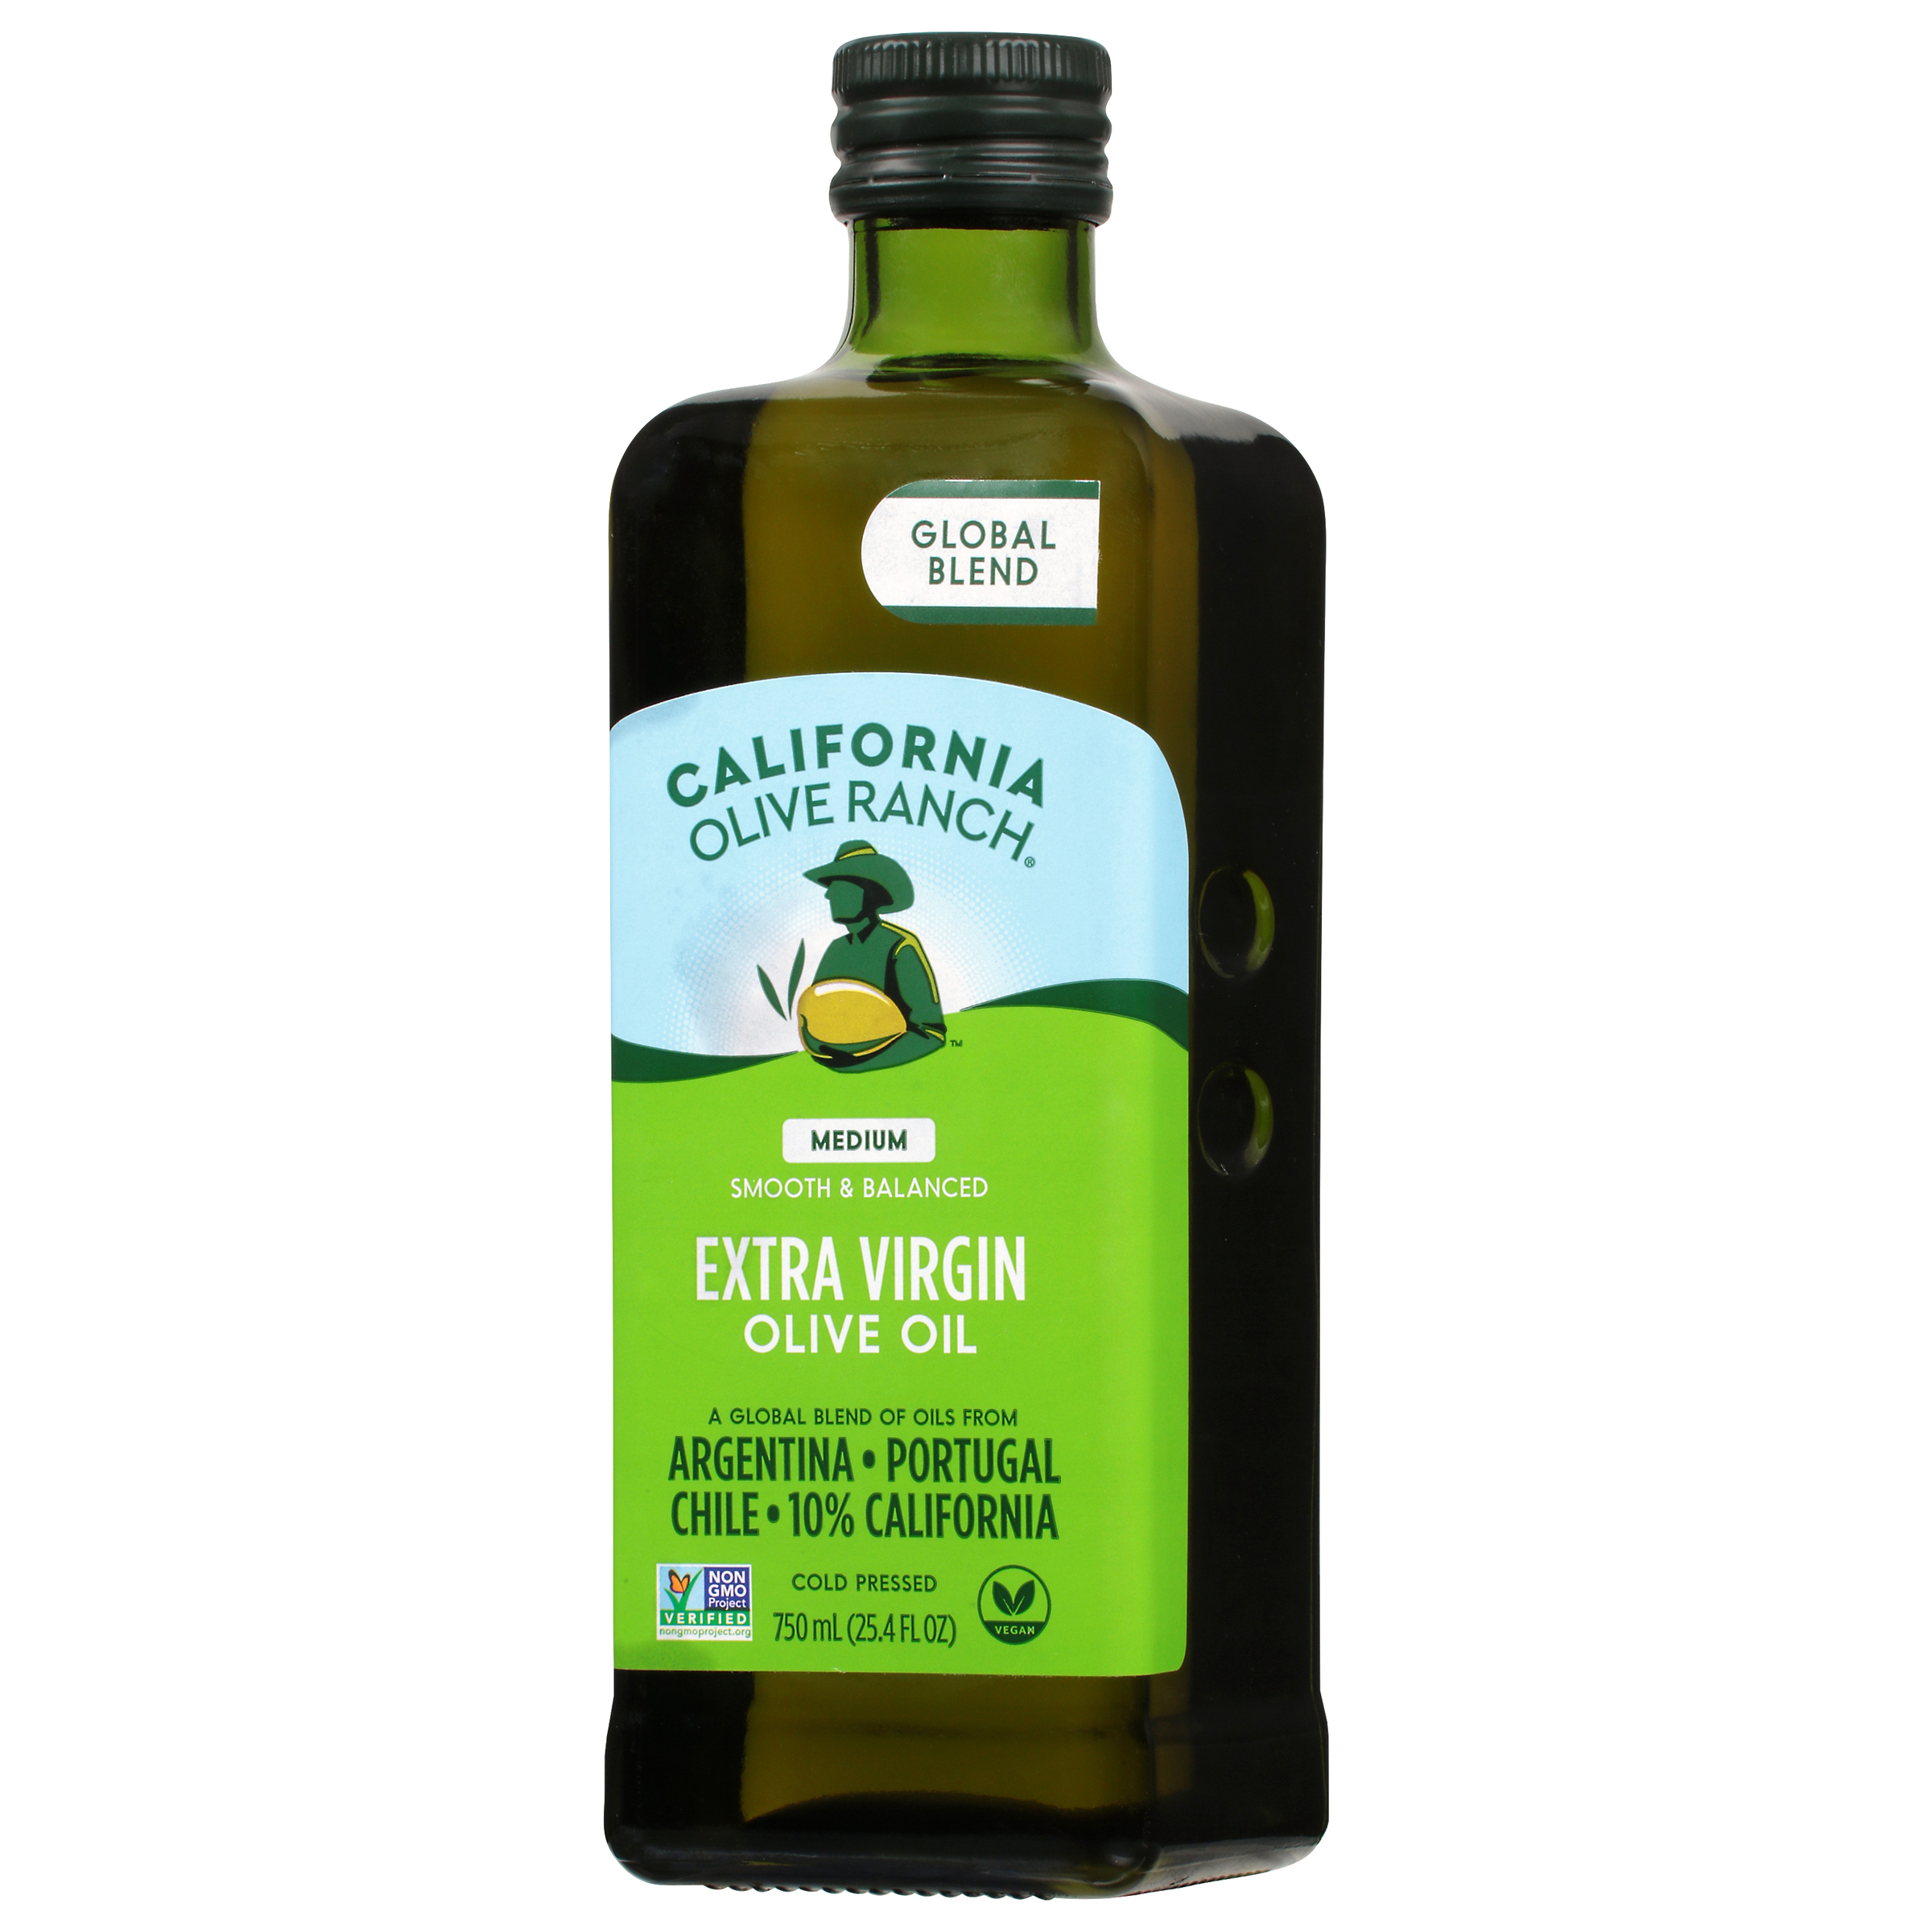 California Olive Ranch Global Blend Extra Virgin Olive Oil, Medium, 25.4 fl oz - image 5 of 7